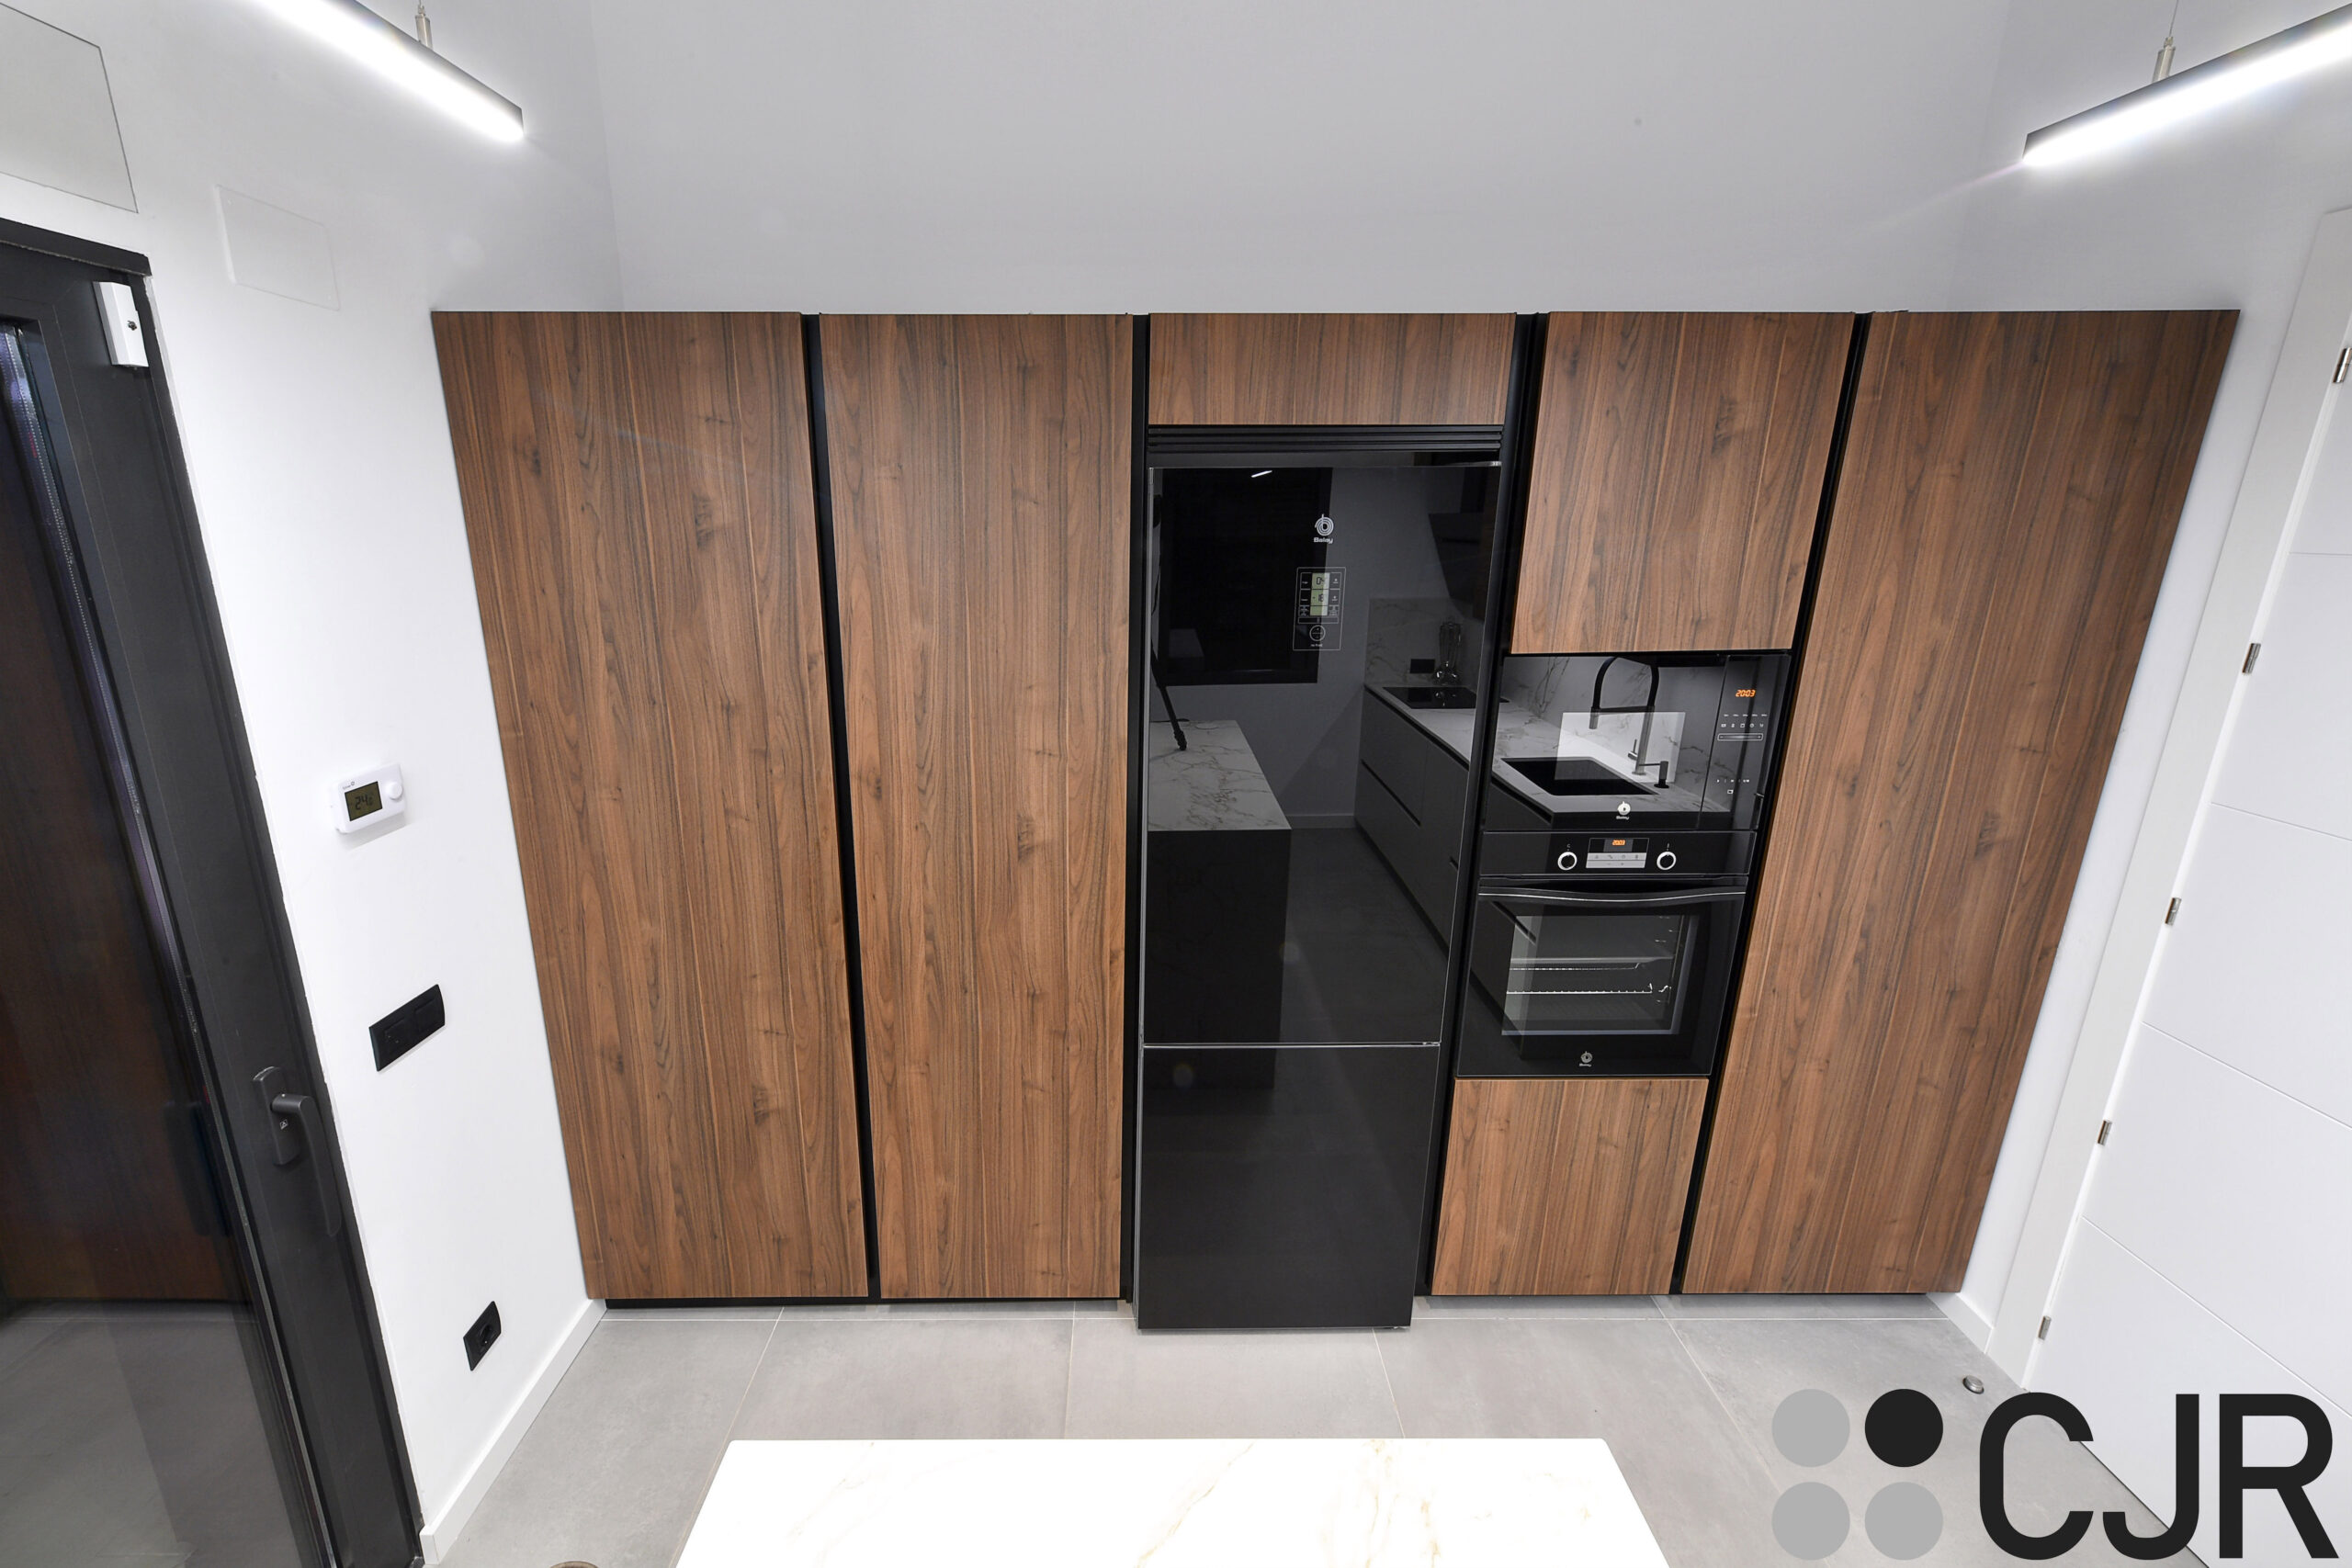 torres de cocina en madera nogal y negro amplio espacio almacenamiento cjr